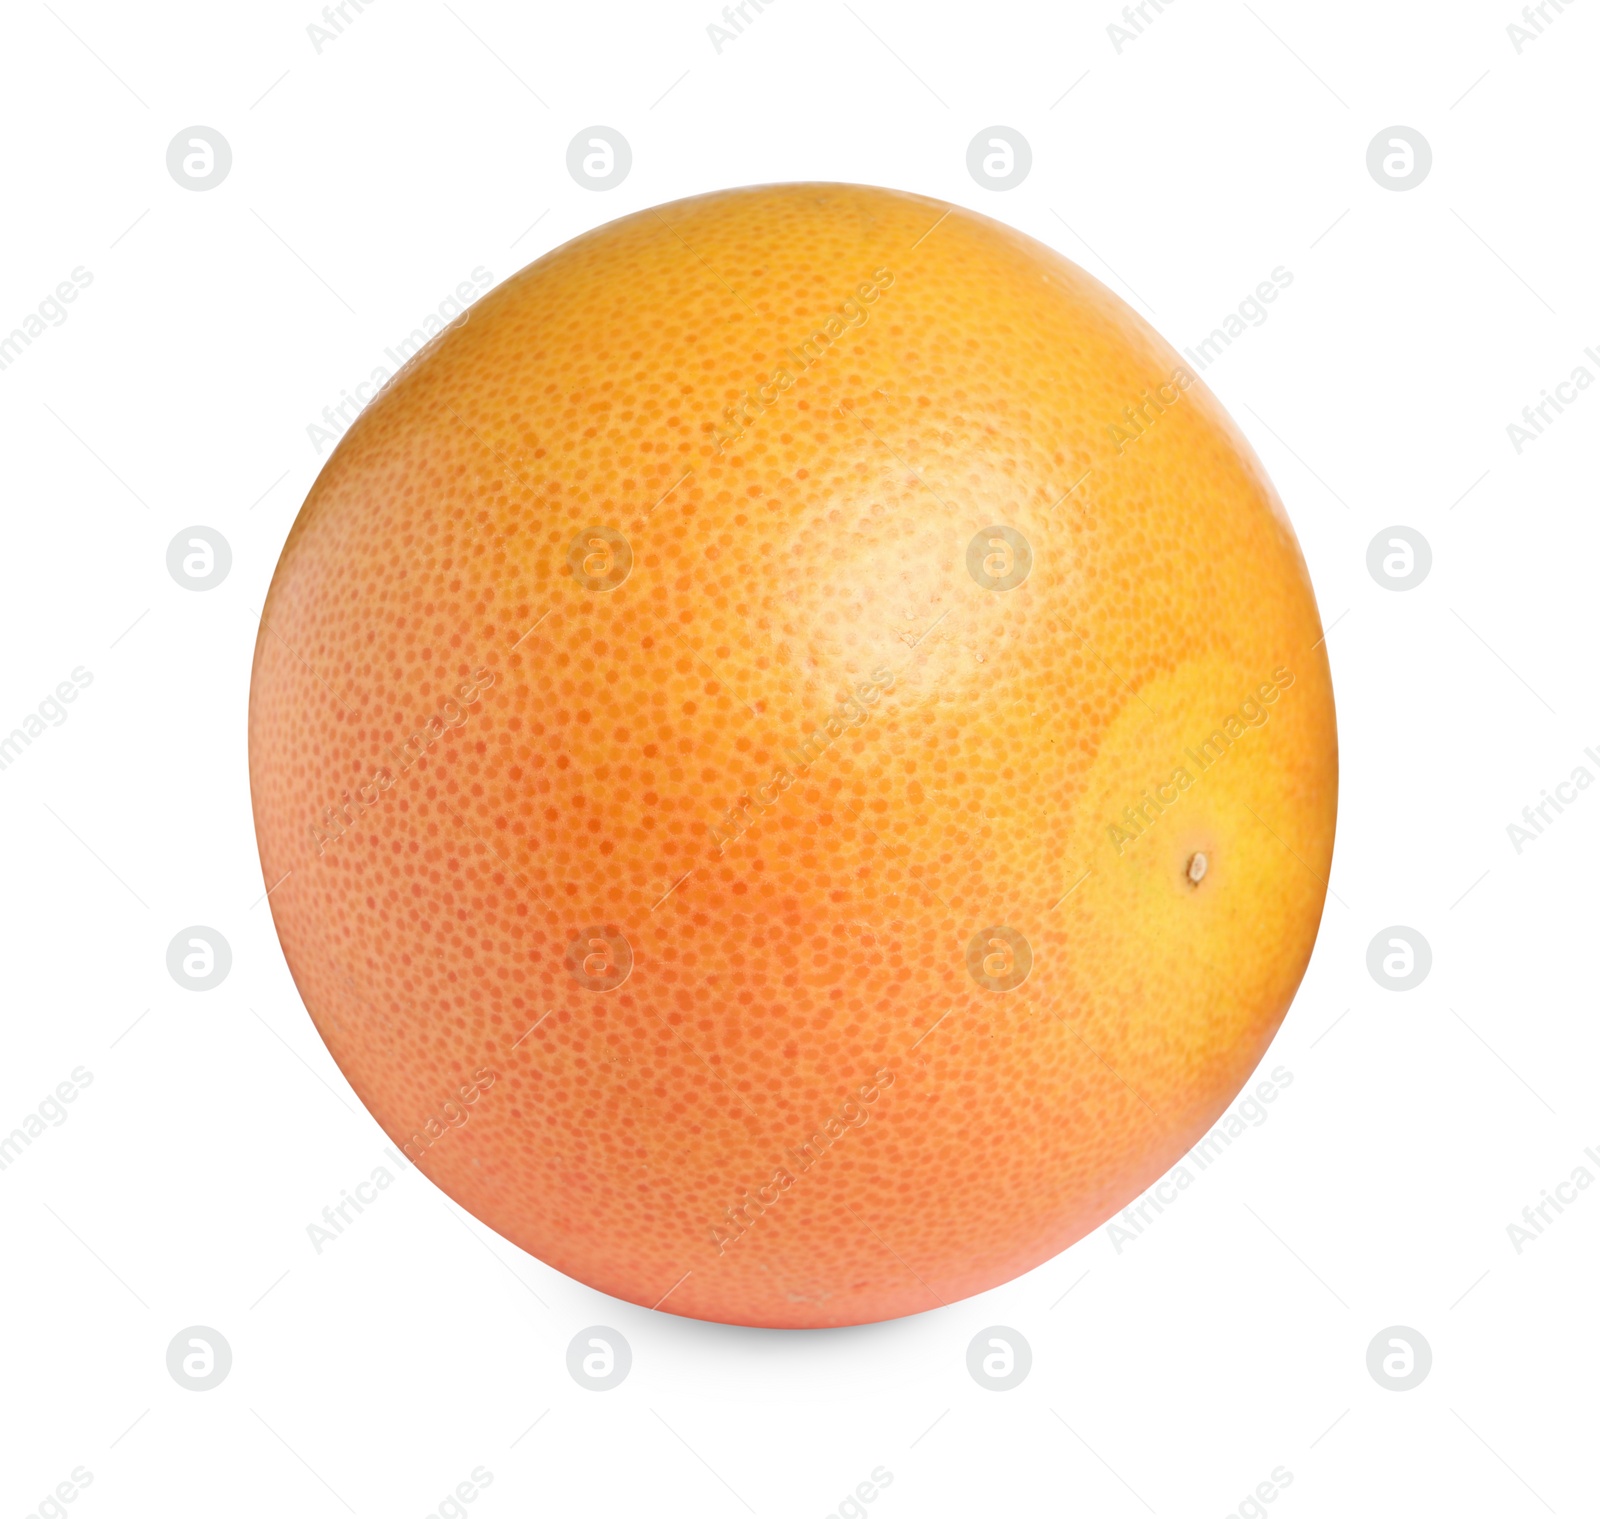 Photo of Citrus fruit. Whole fresh grapefruit isolated on white